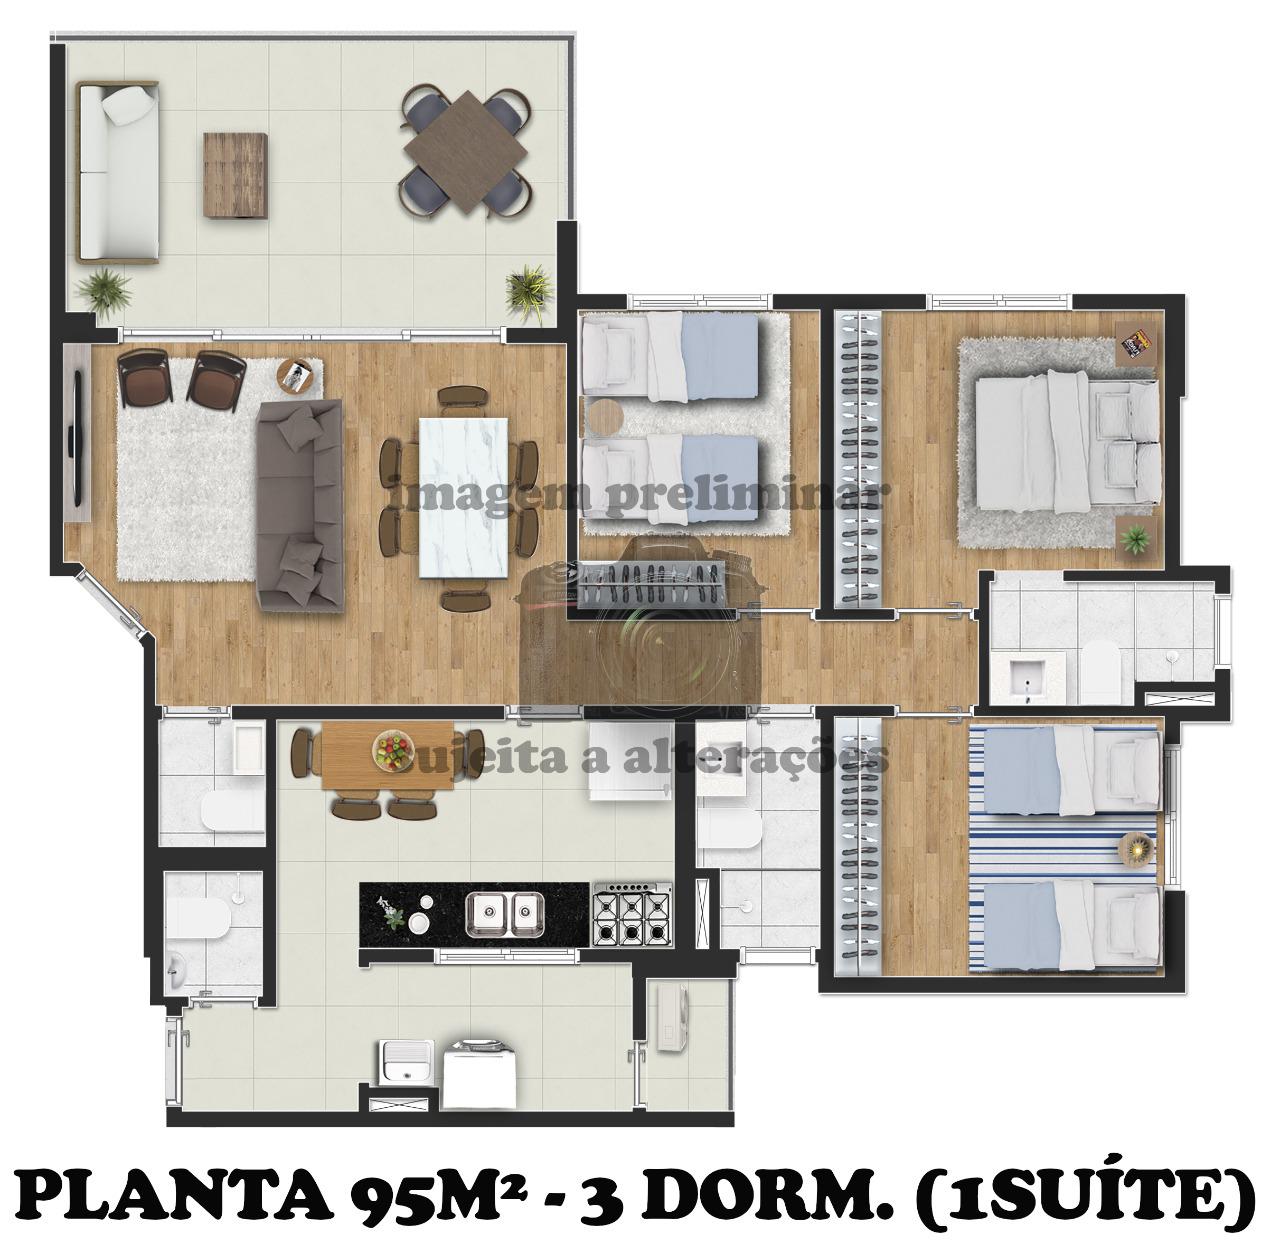 Planta De 95M² Com 3 Dorms. Com 1 Suíte Do Lançamento Exclusiv Vila Mariana